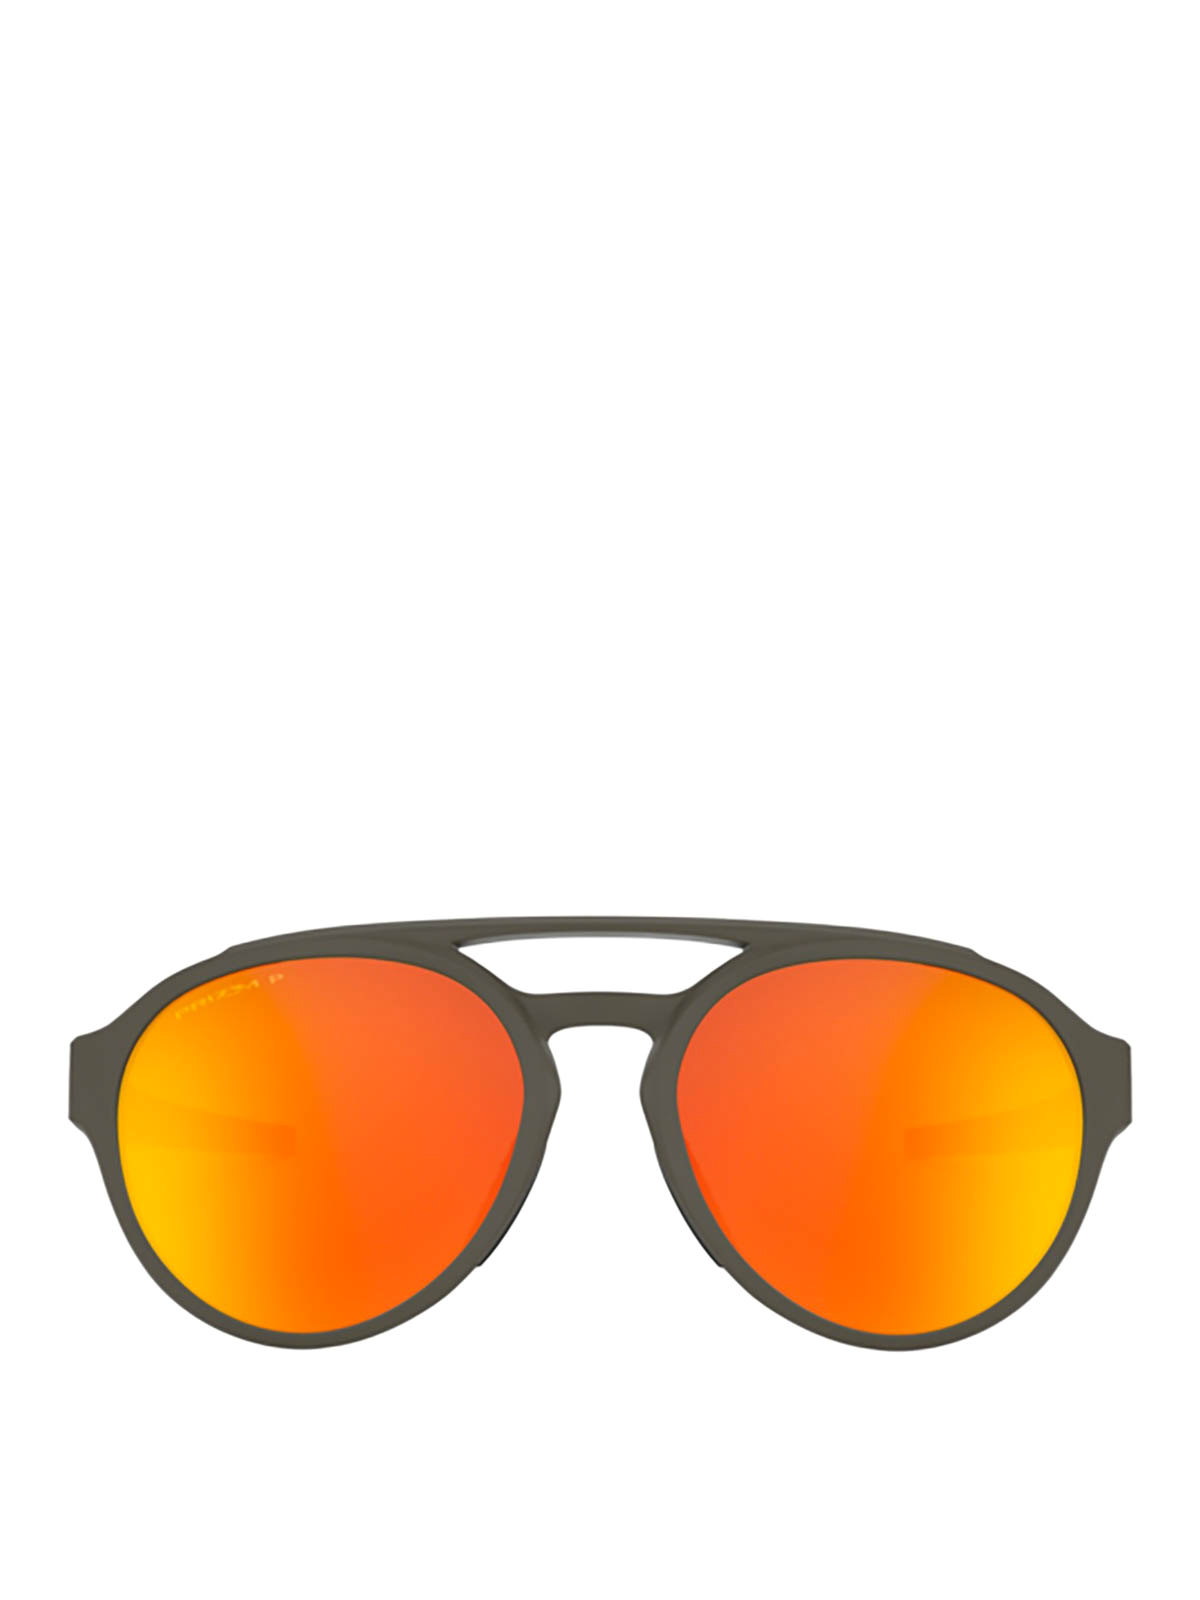 orange and white oakley sunglasses